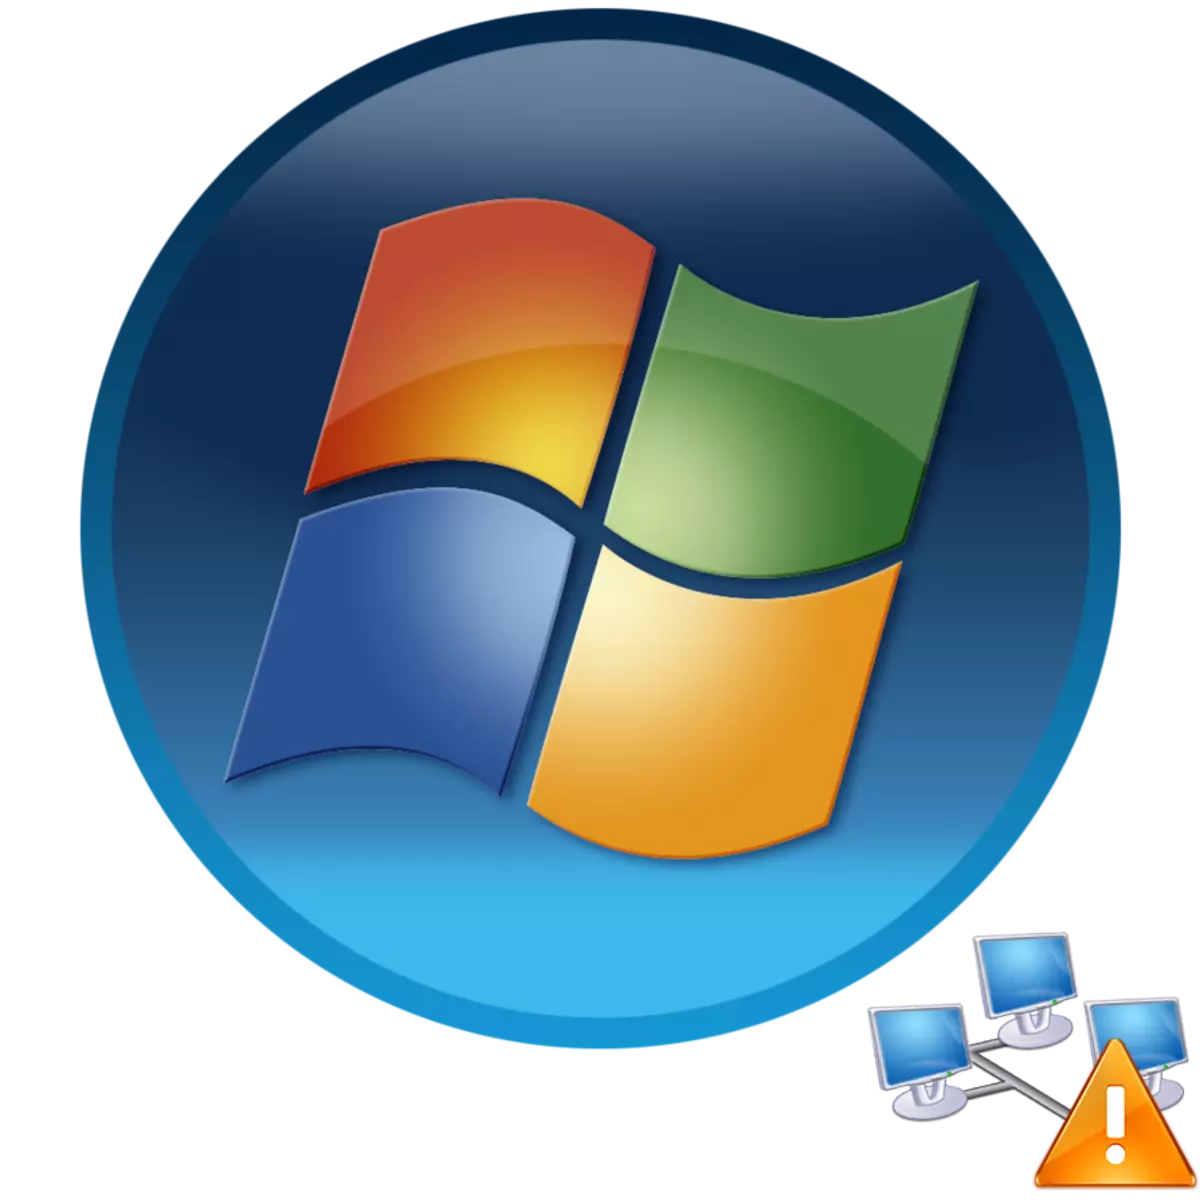 De computer op Windows 7 wordt niet weergegeven in het netwerk in Windows 7